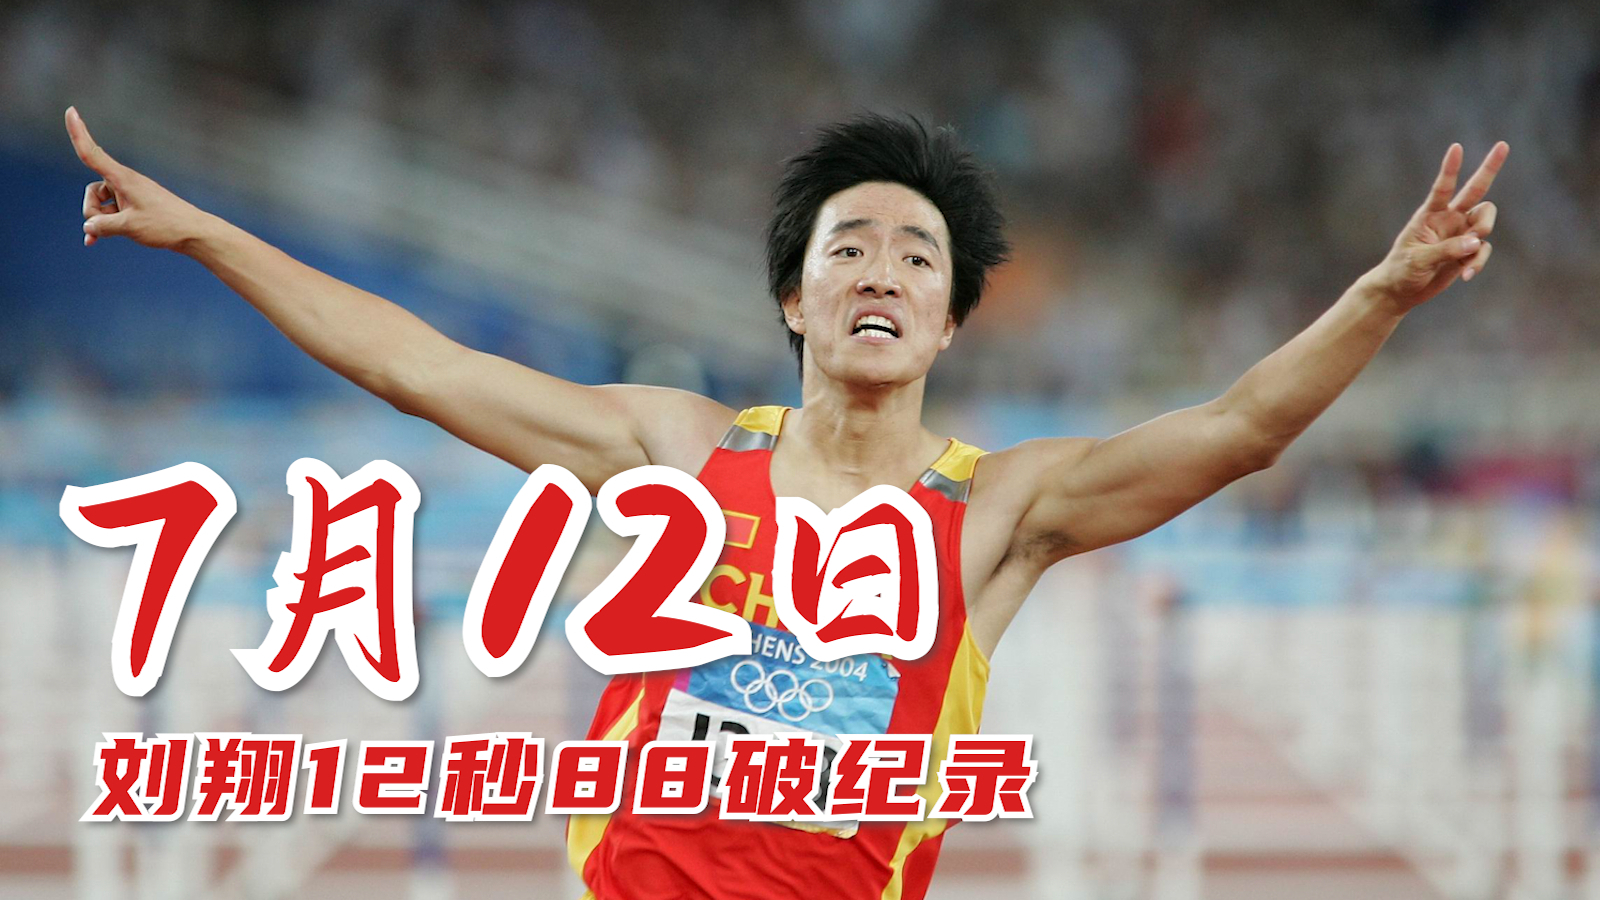 历史上的7月12日刘翔12秒88破纪录夺冠我们都欠你一个道歉